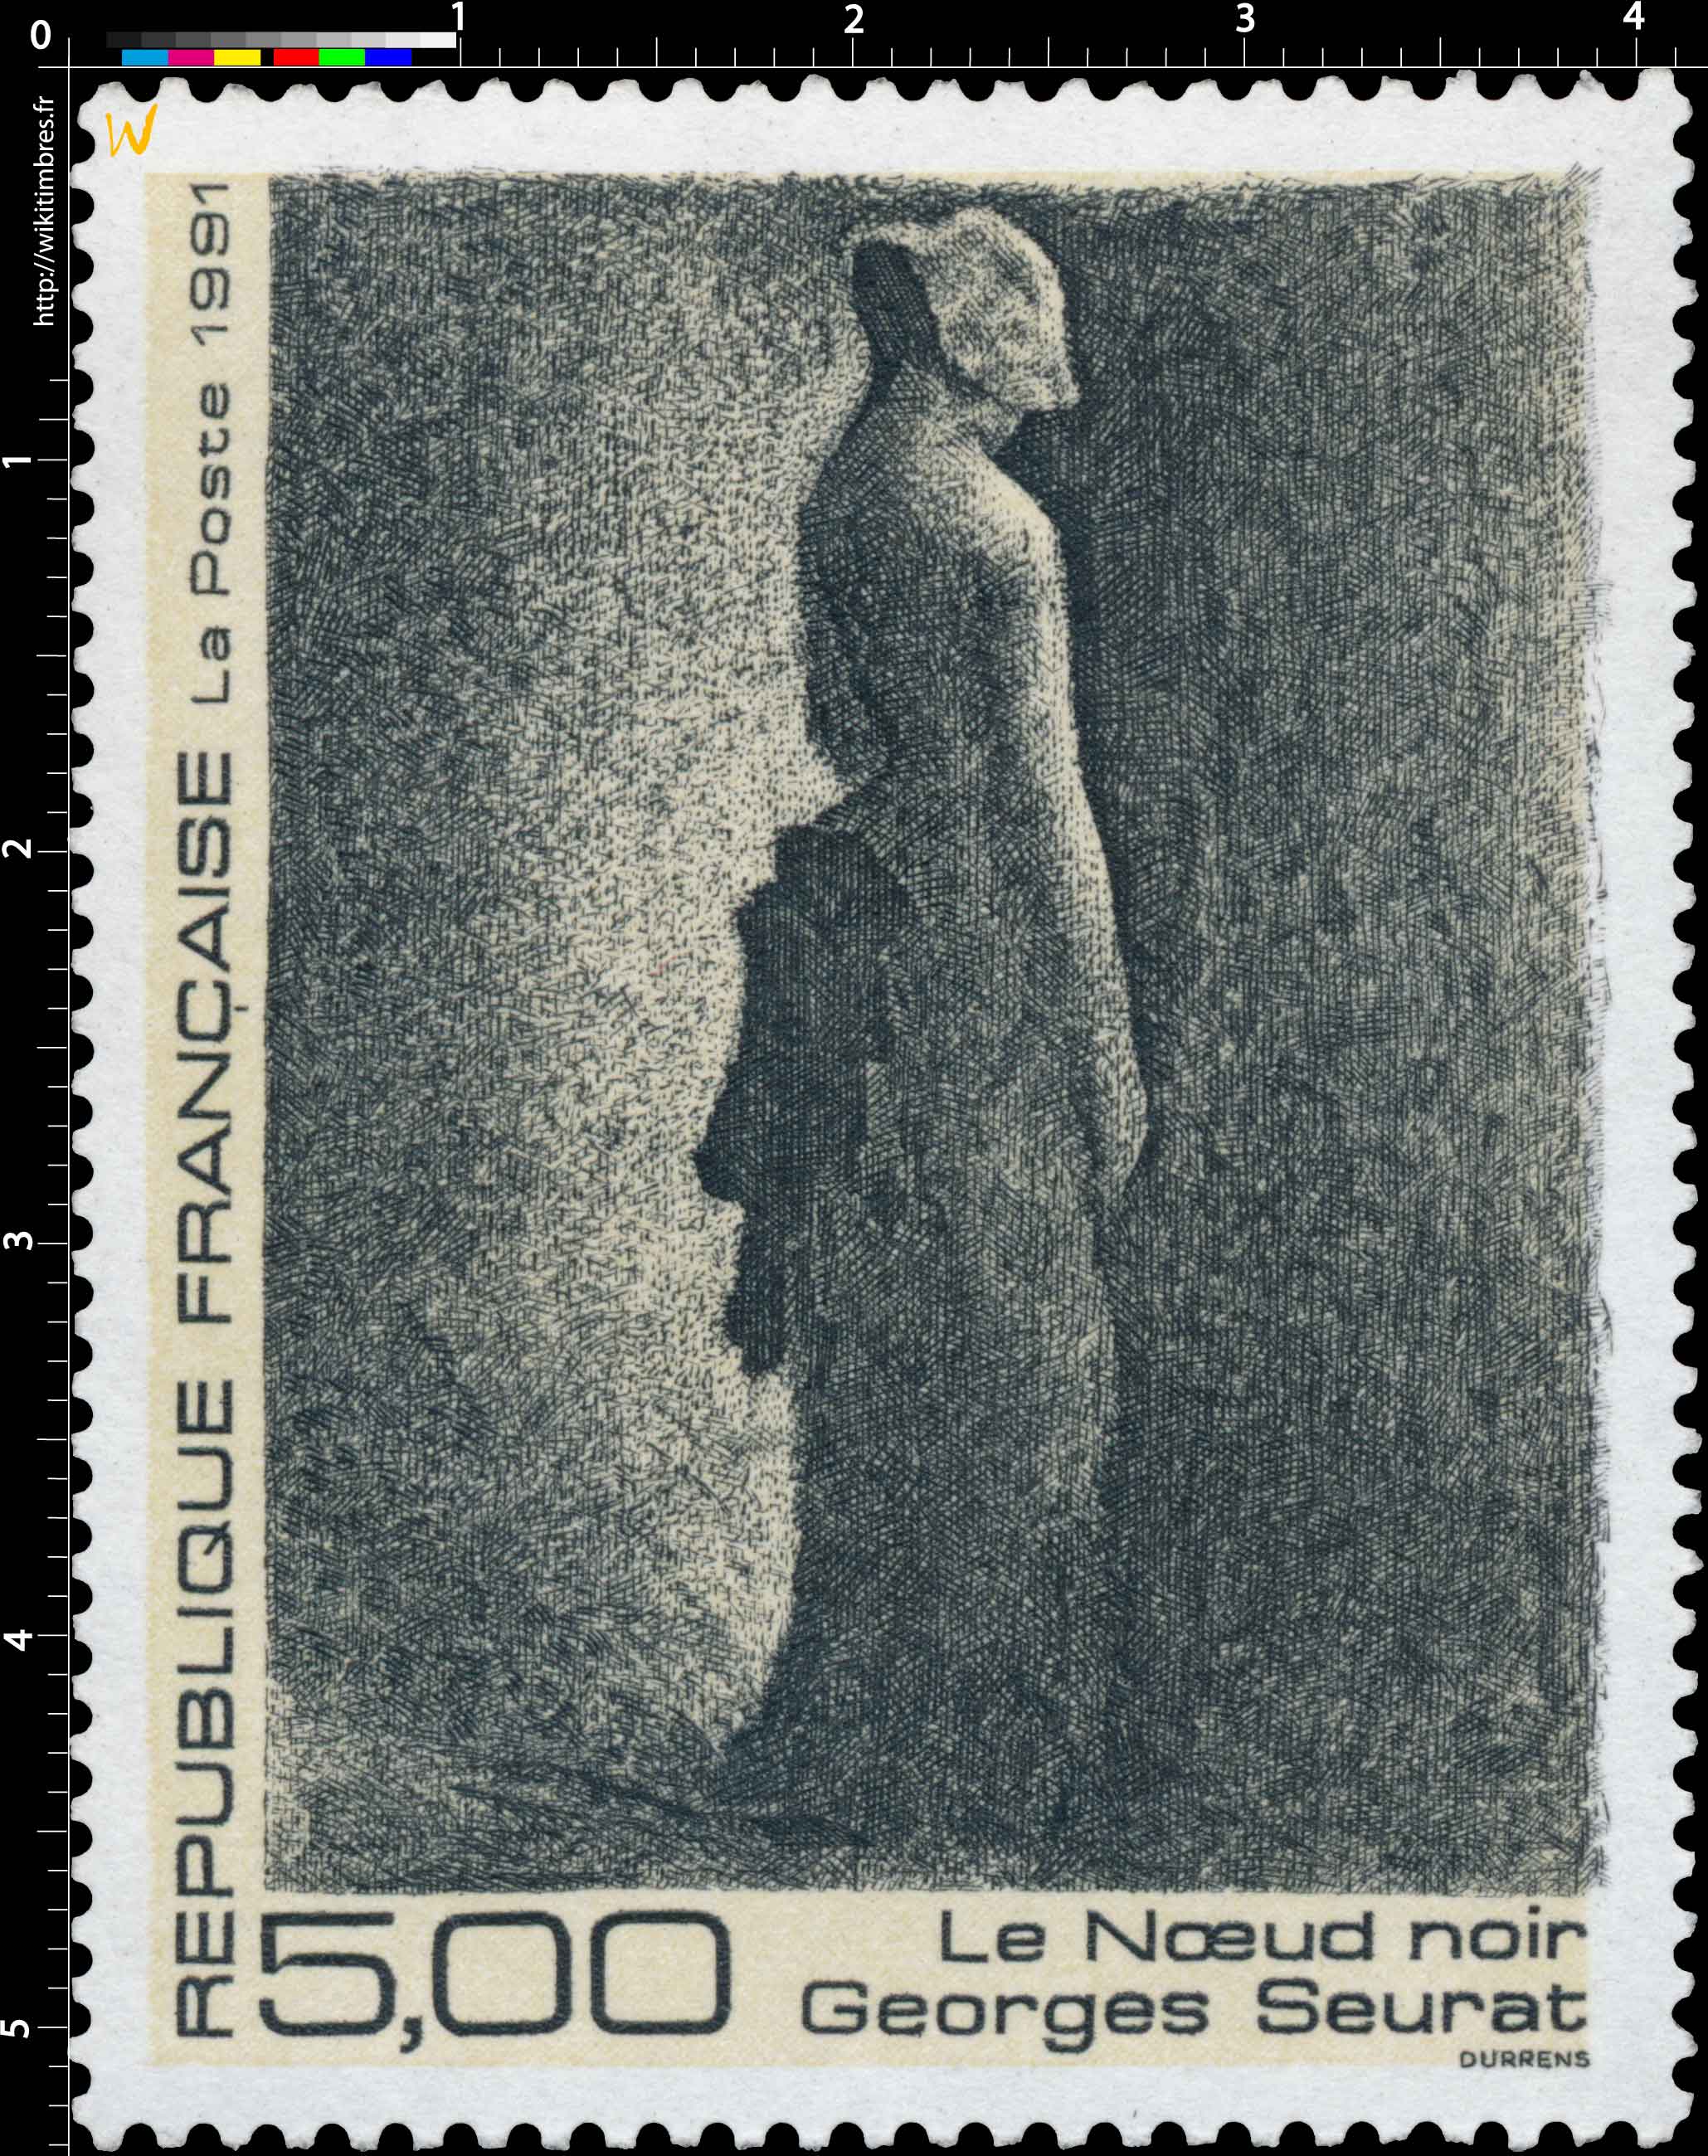 1991 Le Nœud noir Georges Seurat